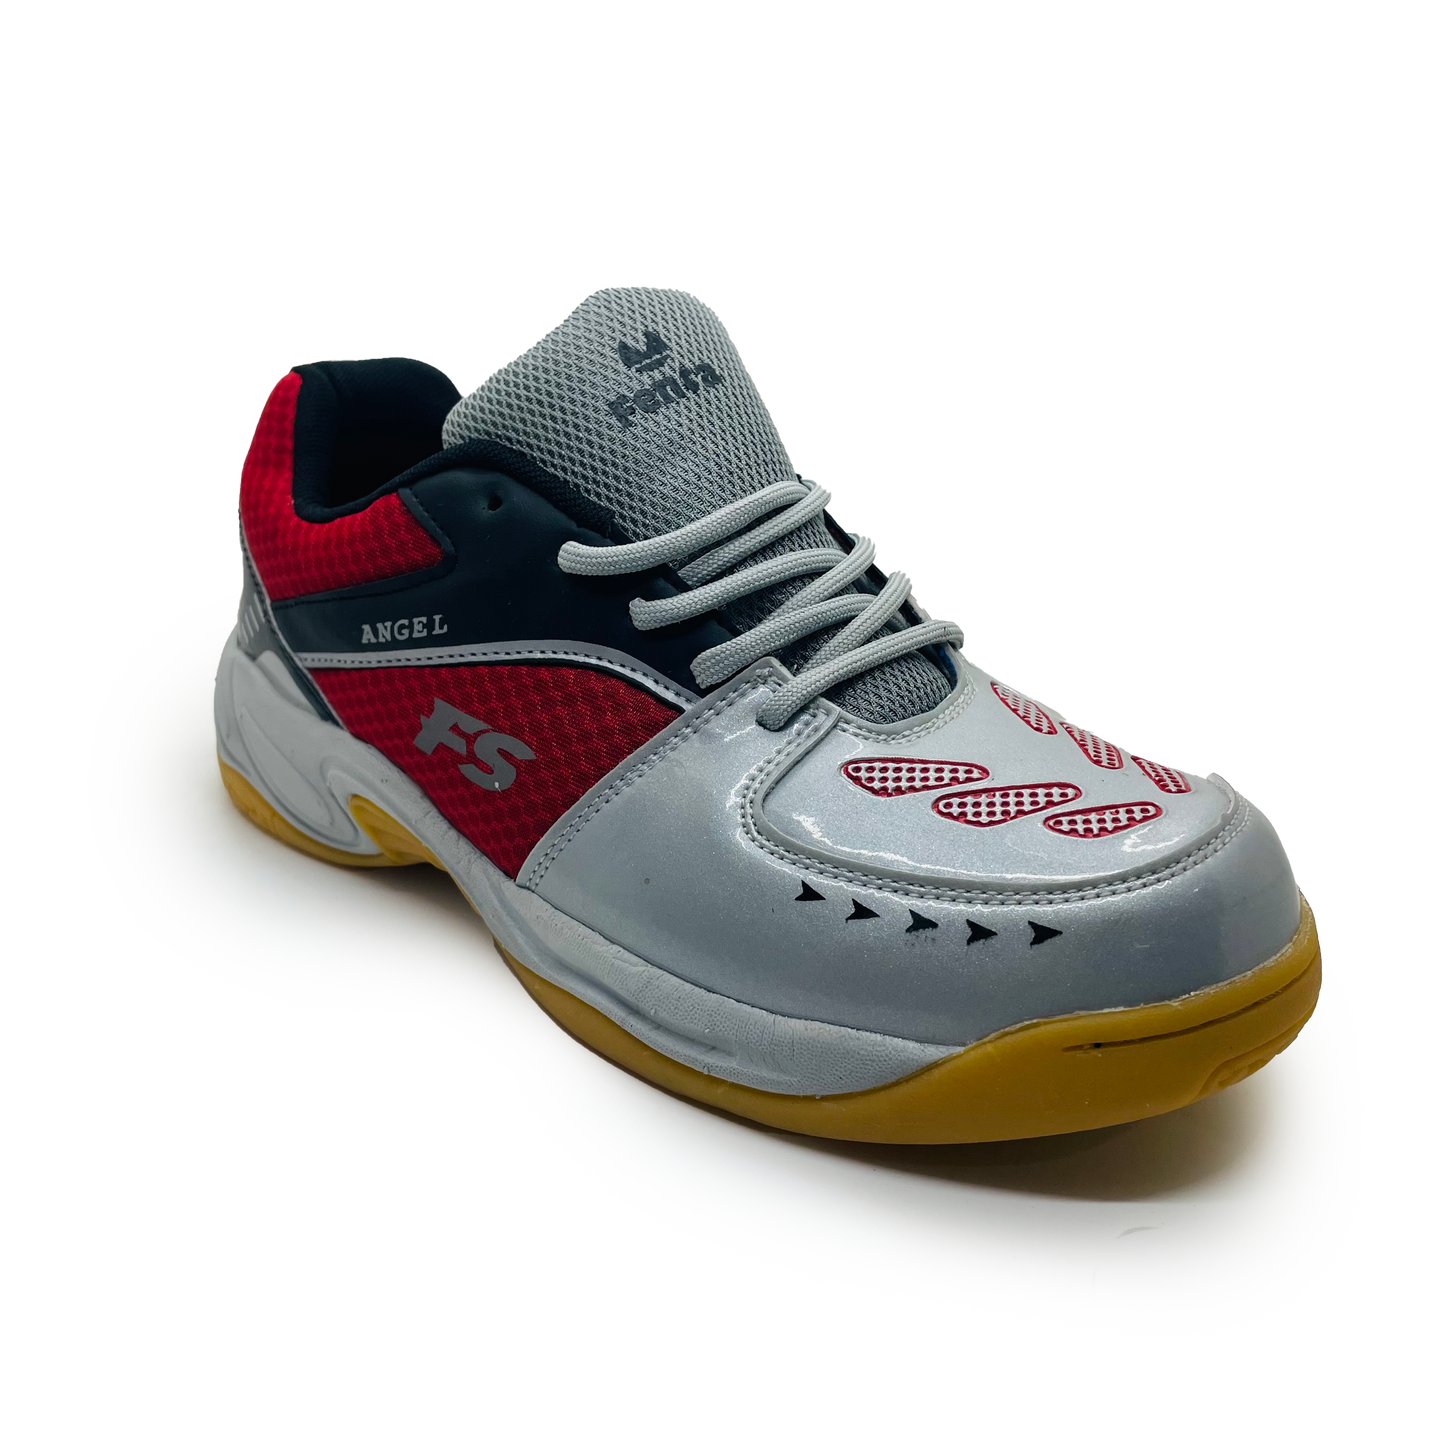 Fenta Sports Boys Angel Badminton Shoes (Phynol  Sole )